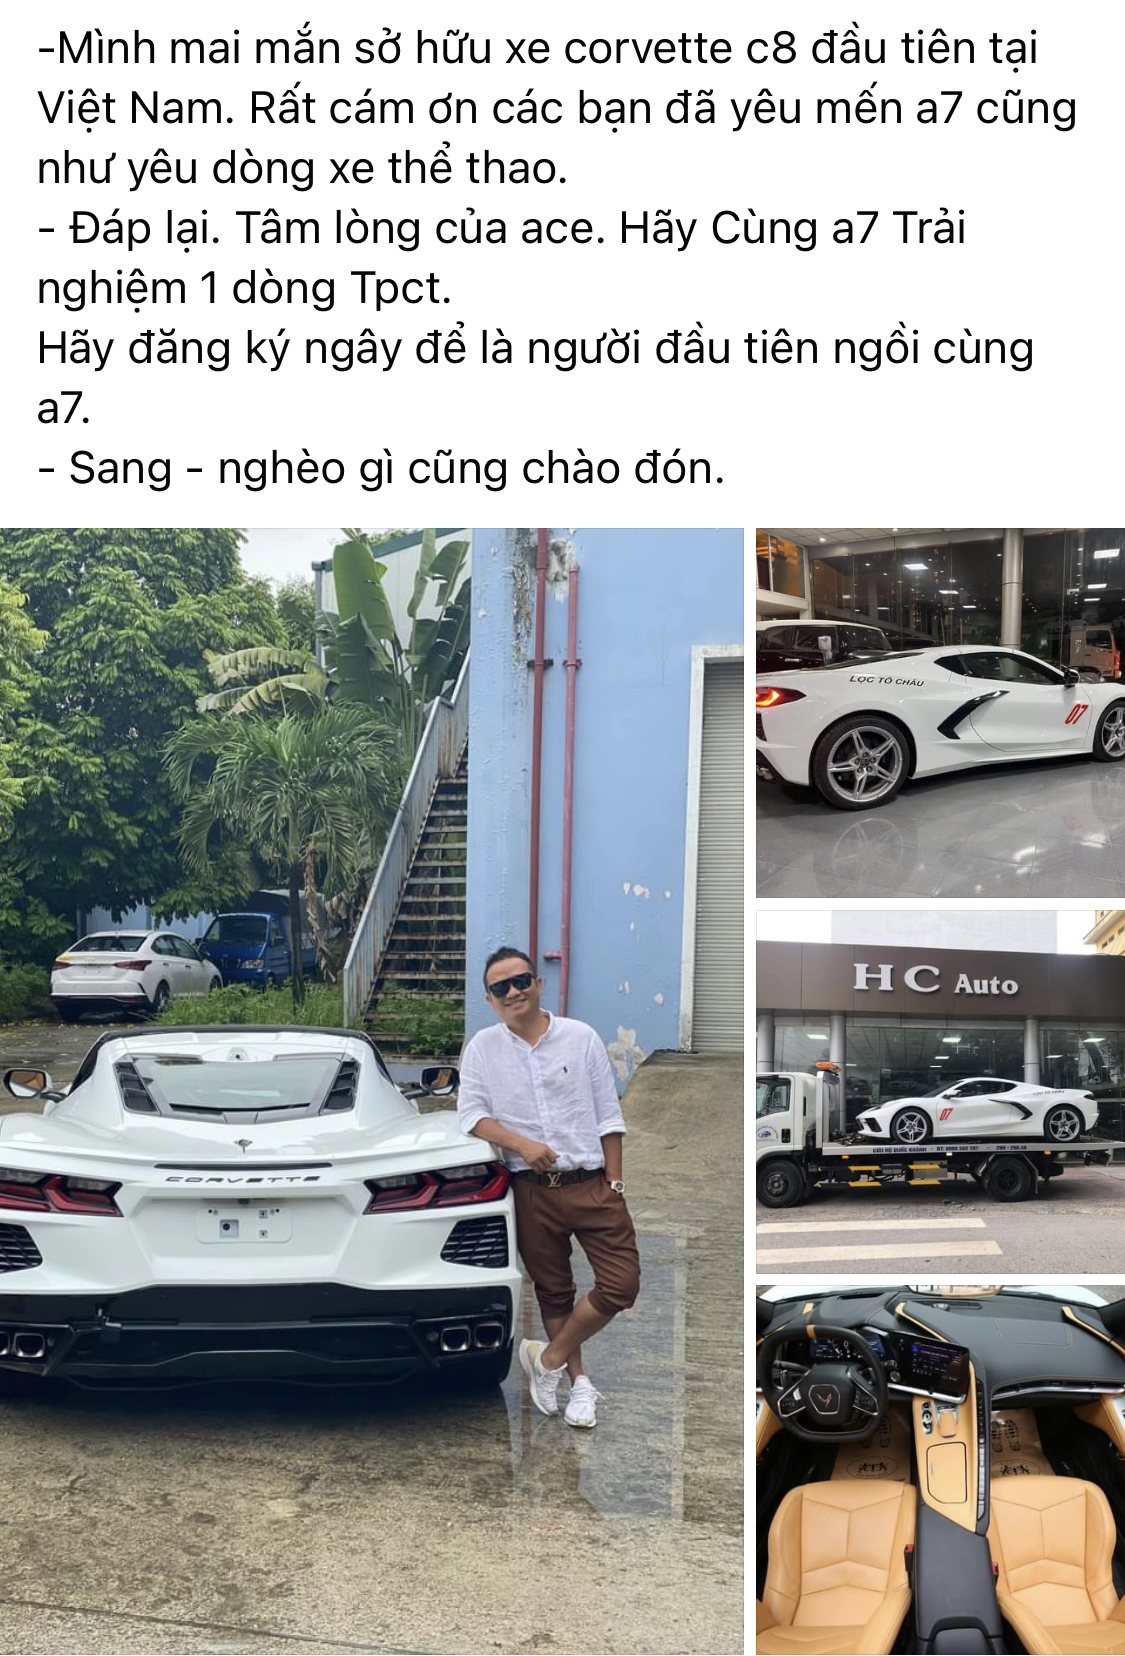 Chevrolet Corvette C8 Stingray hơn 7 tỷ đồng đầu tiên tại Việt Nam chính thức cập bến Cần Thơ - Ảnh 1.